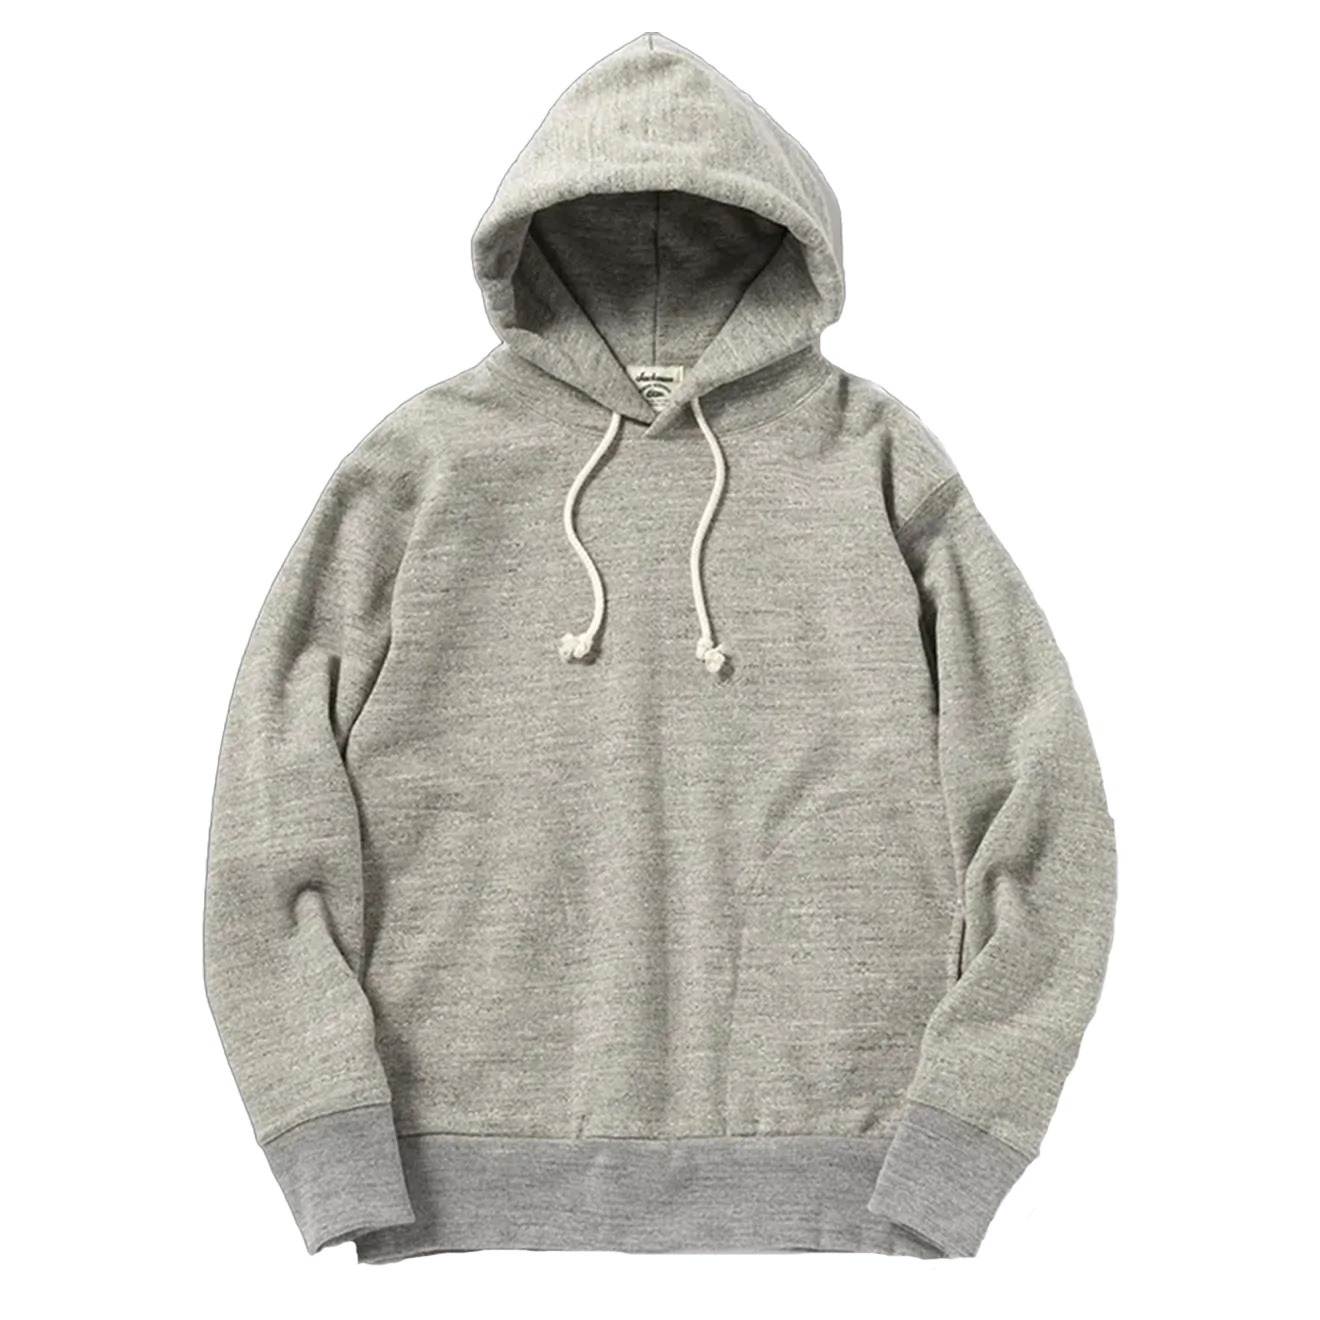 hoodie homme Jackman sweat capuche gris chiné marque japonaise